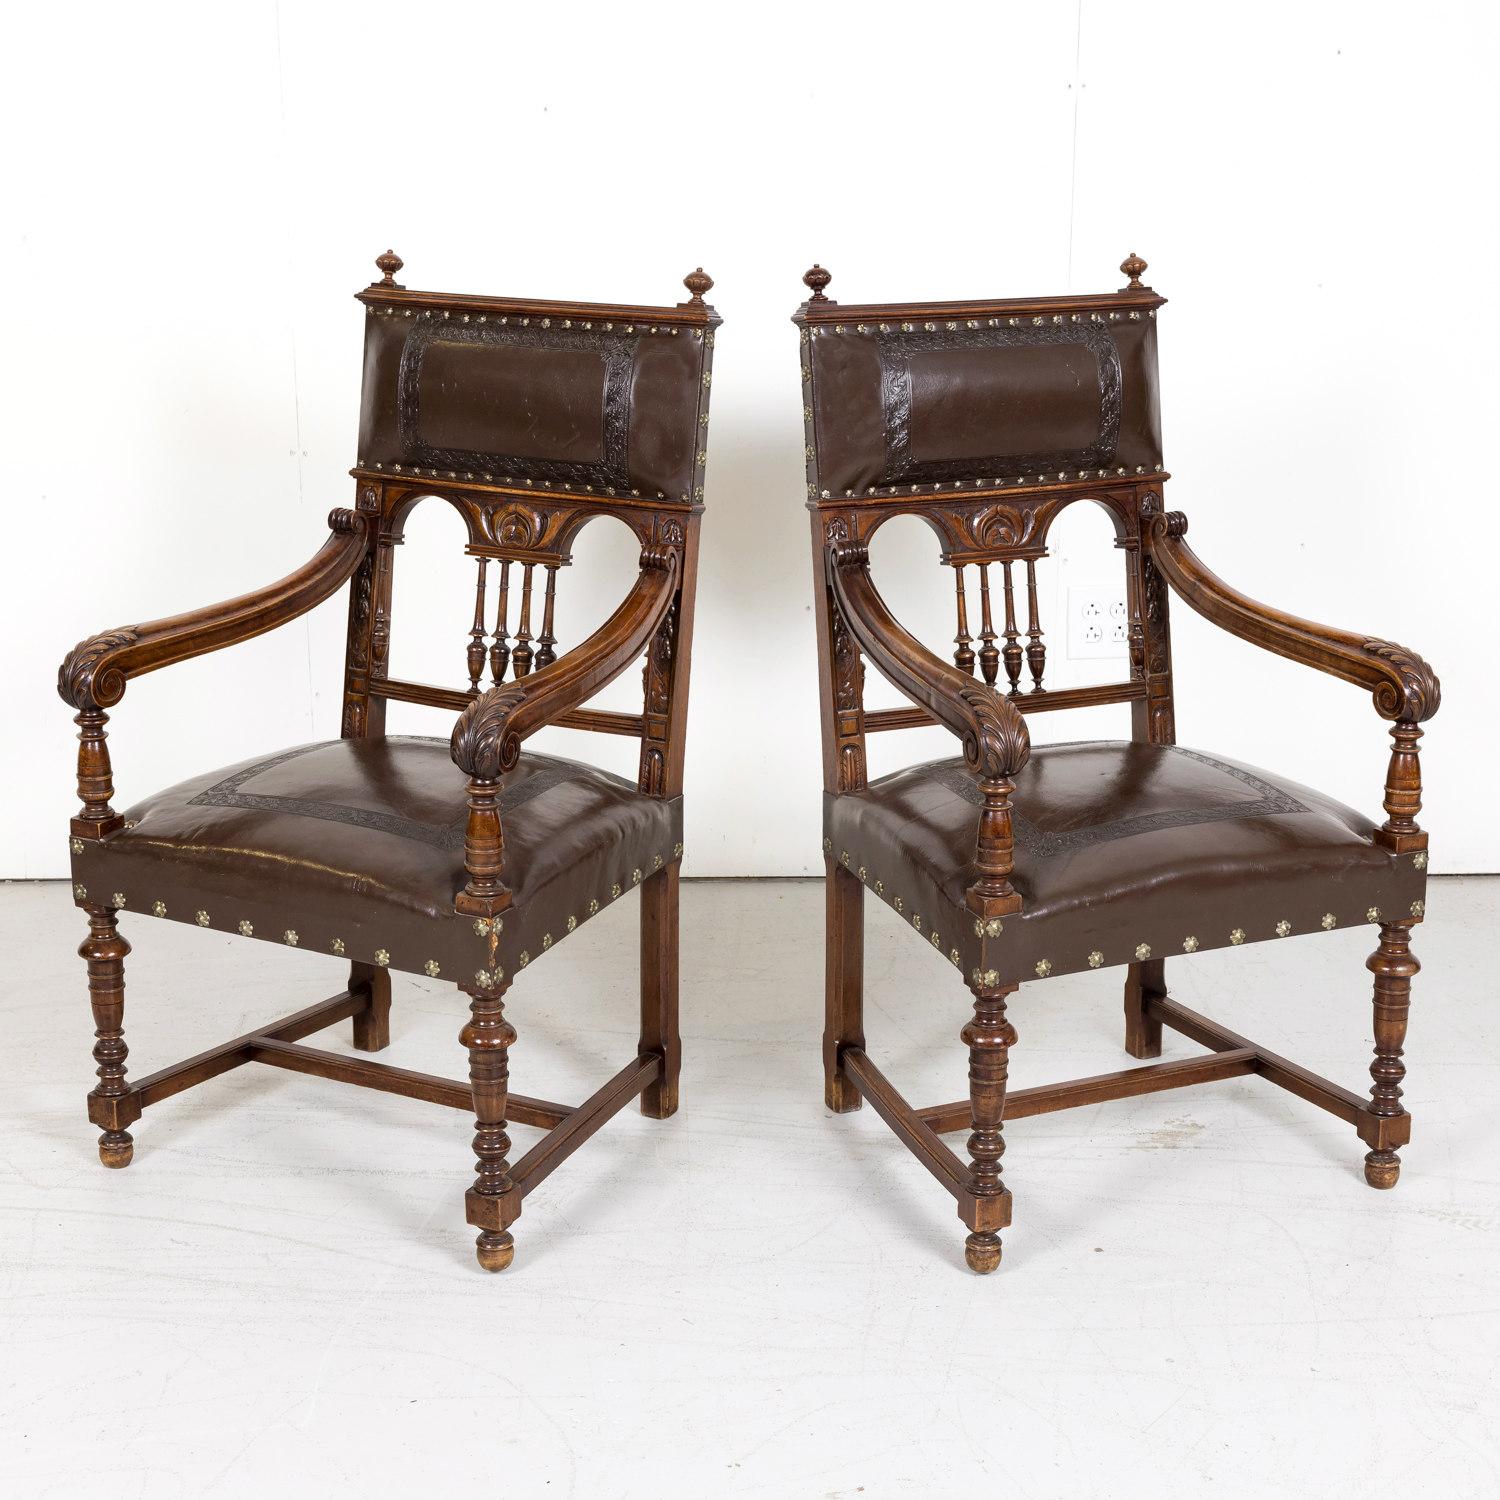 Magnifique paire de fauteuils en cuir HENRYCA du XIXe siècle, fabriqués à la main à Perpignan, une ville française située près de la frontière espagnole et de la côte méditerranéenne, en noyer massif, avec des sièges et des dossiers en cuir estampé